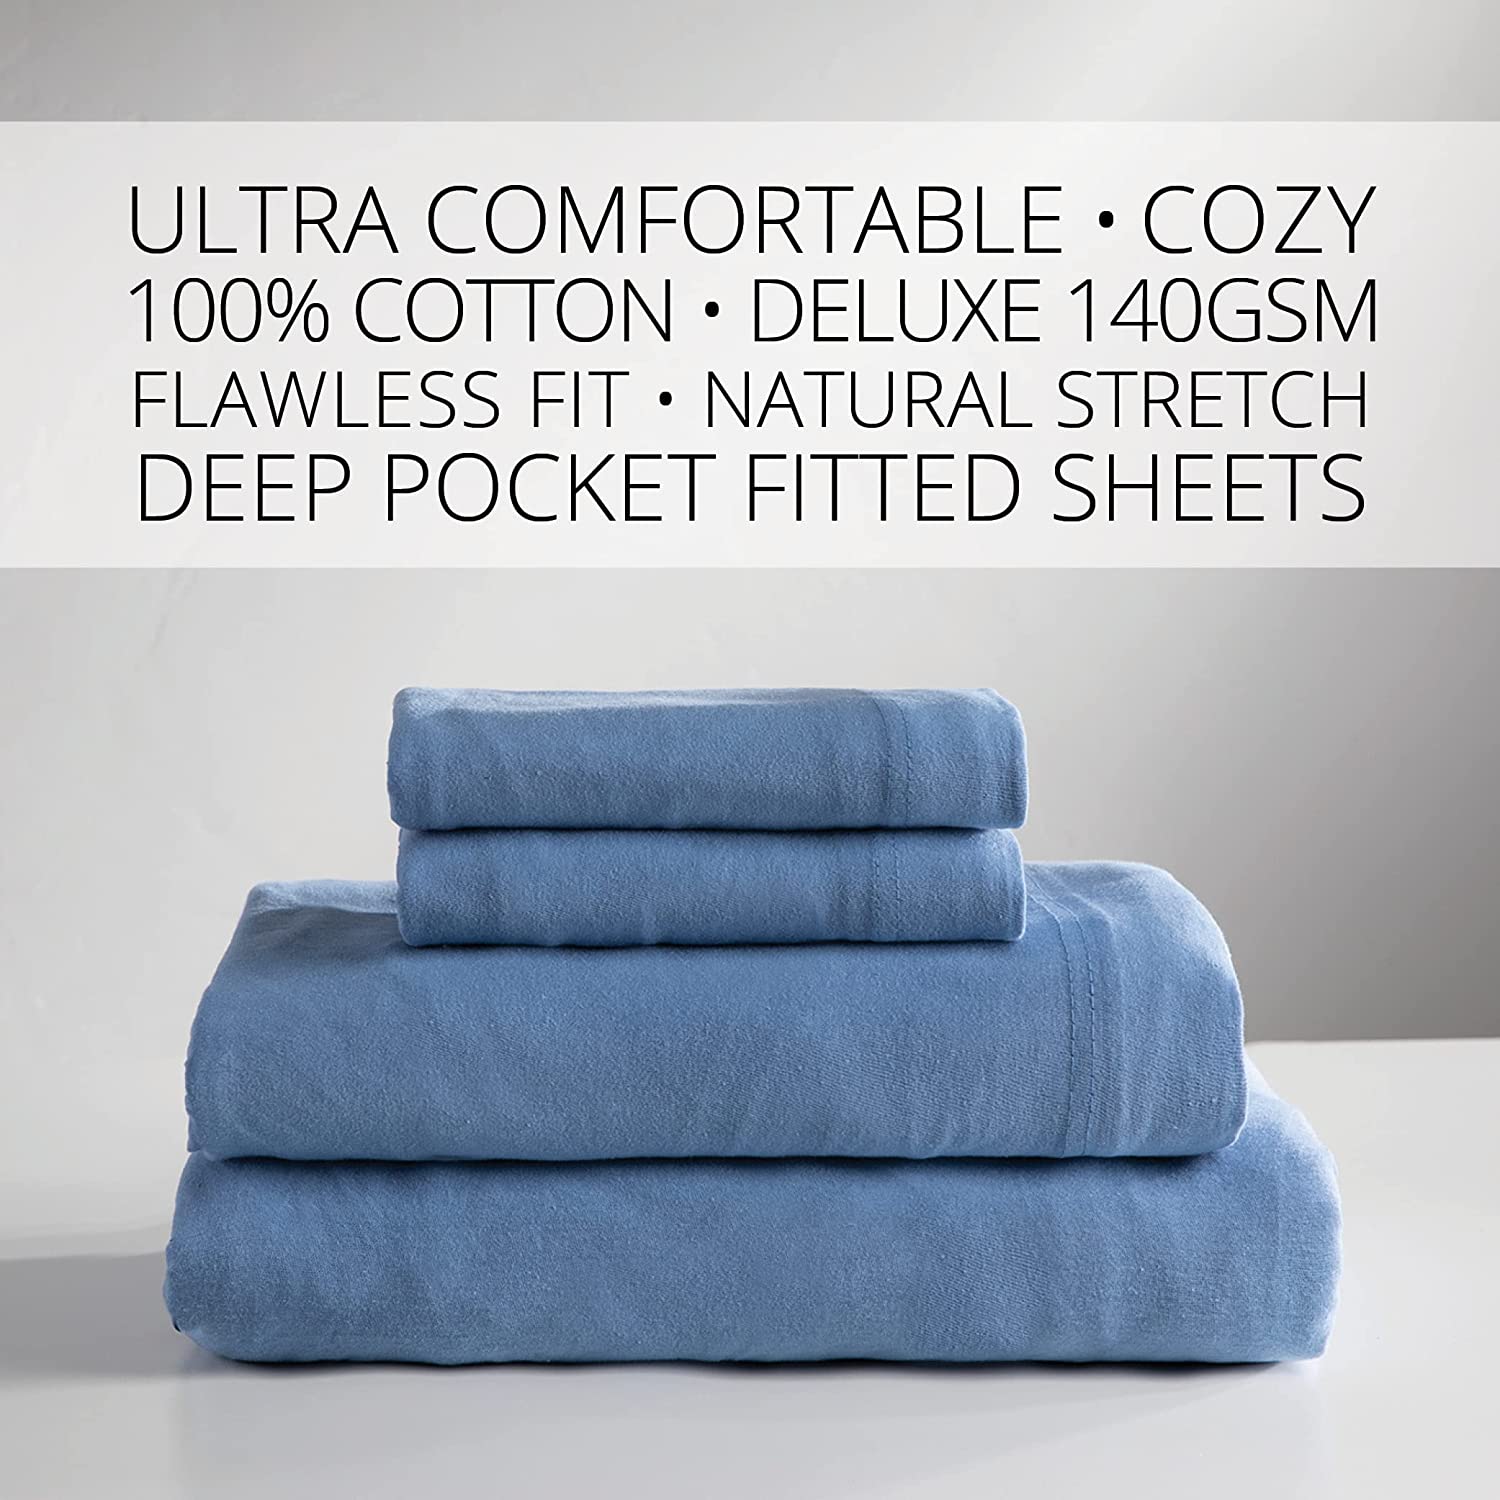 Baltic Linen Jersey Cotton Sheet Set, Full, Blue, 4 Piece